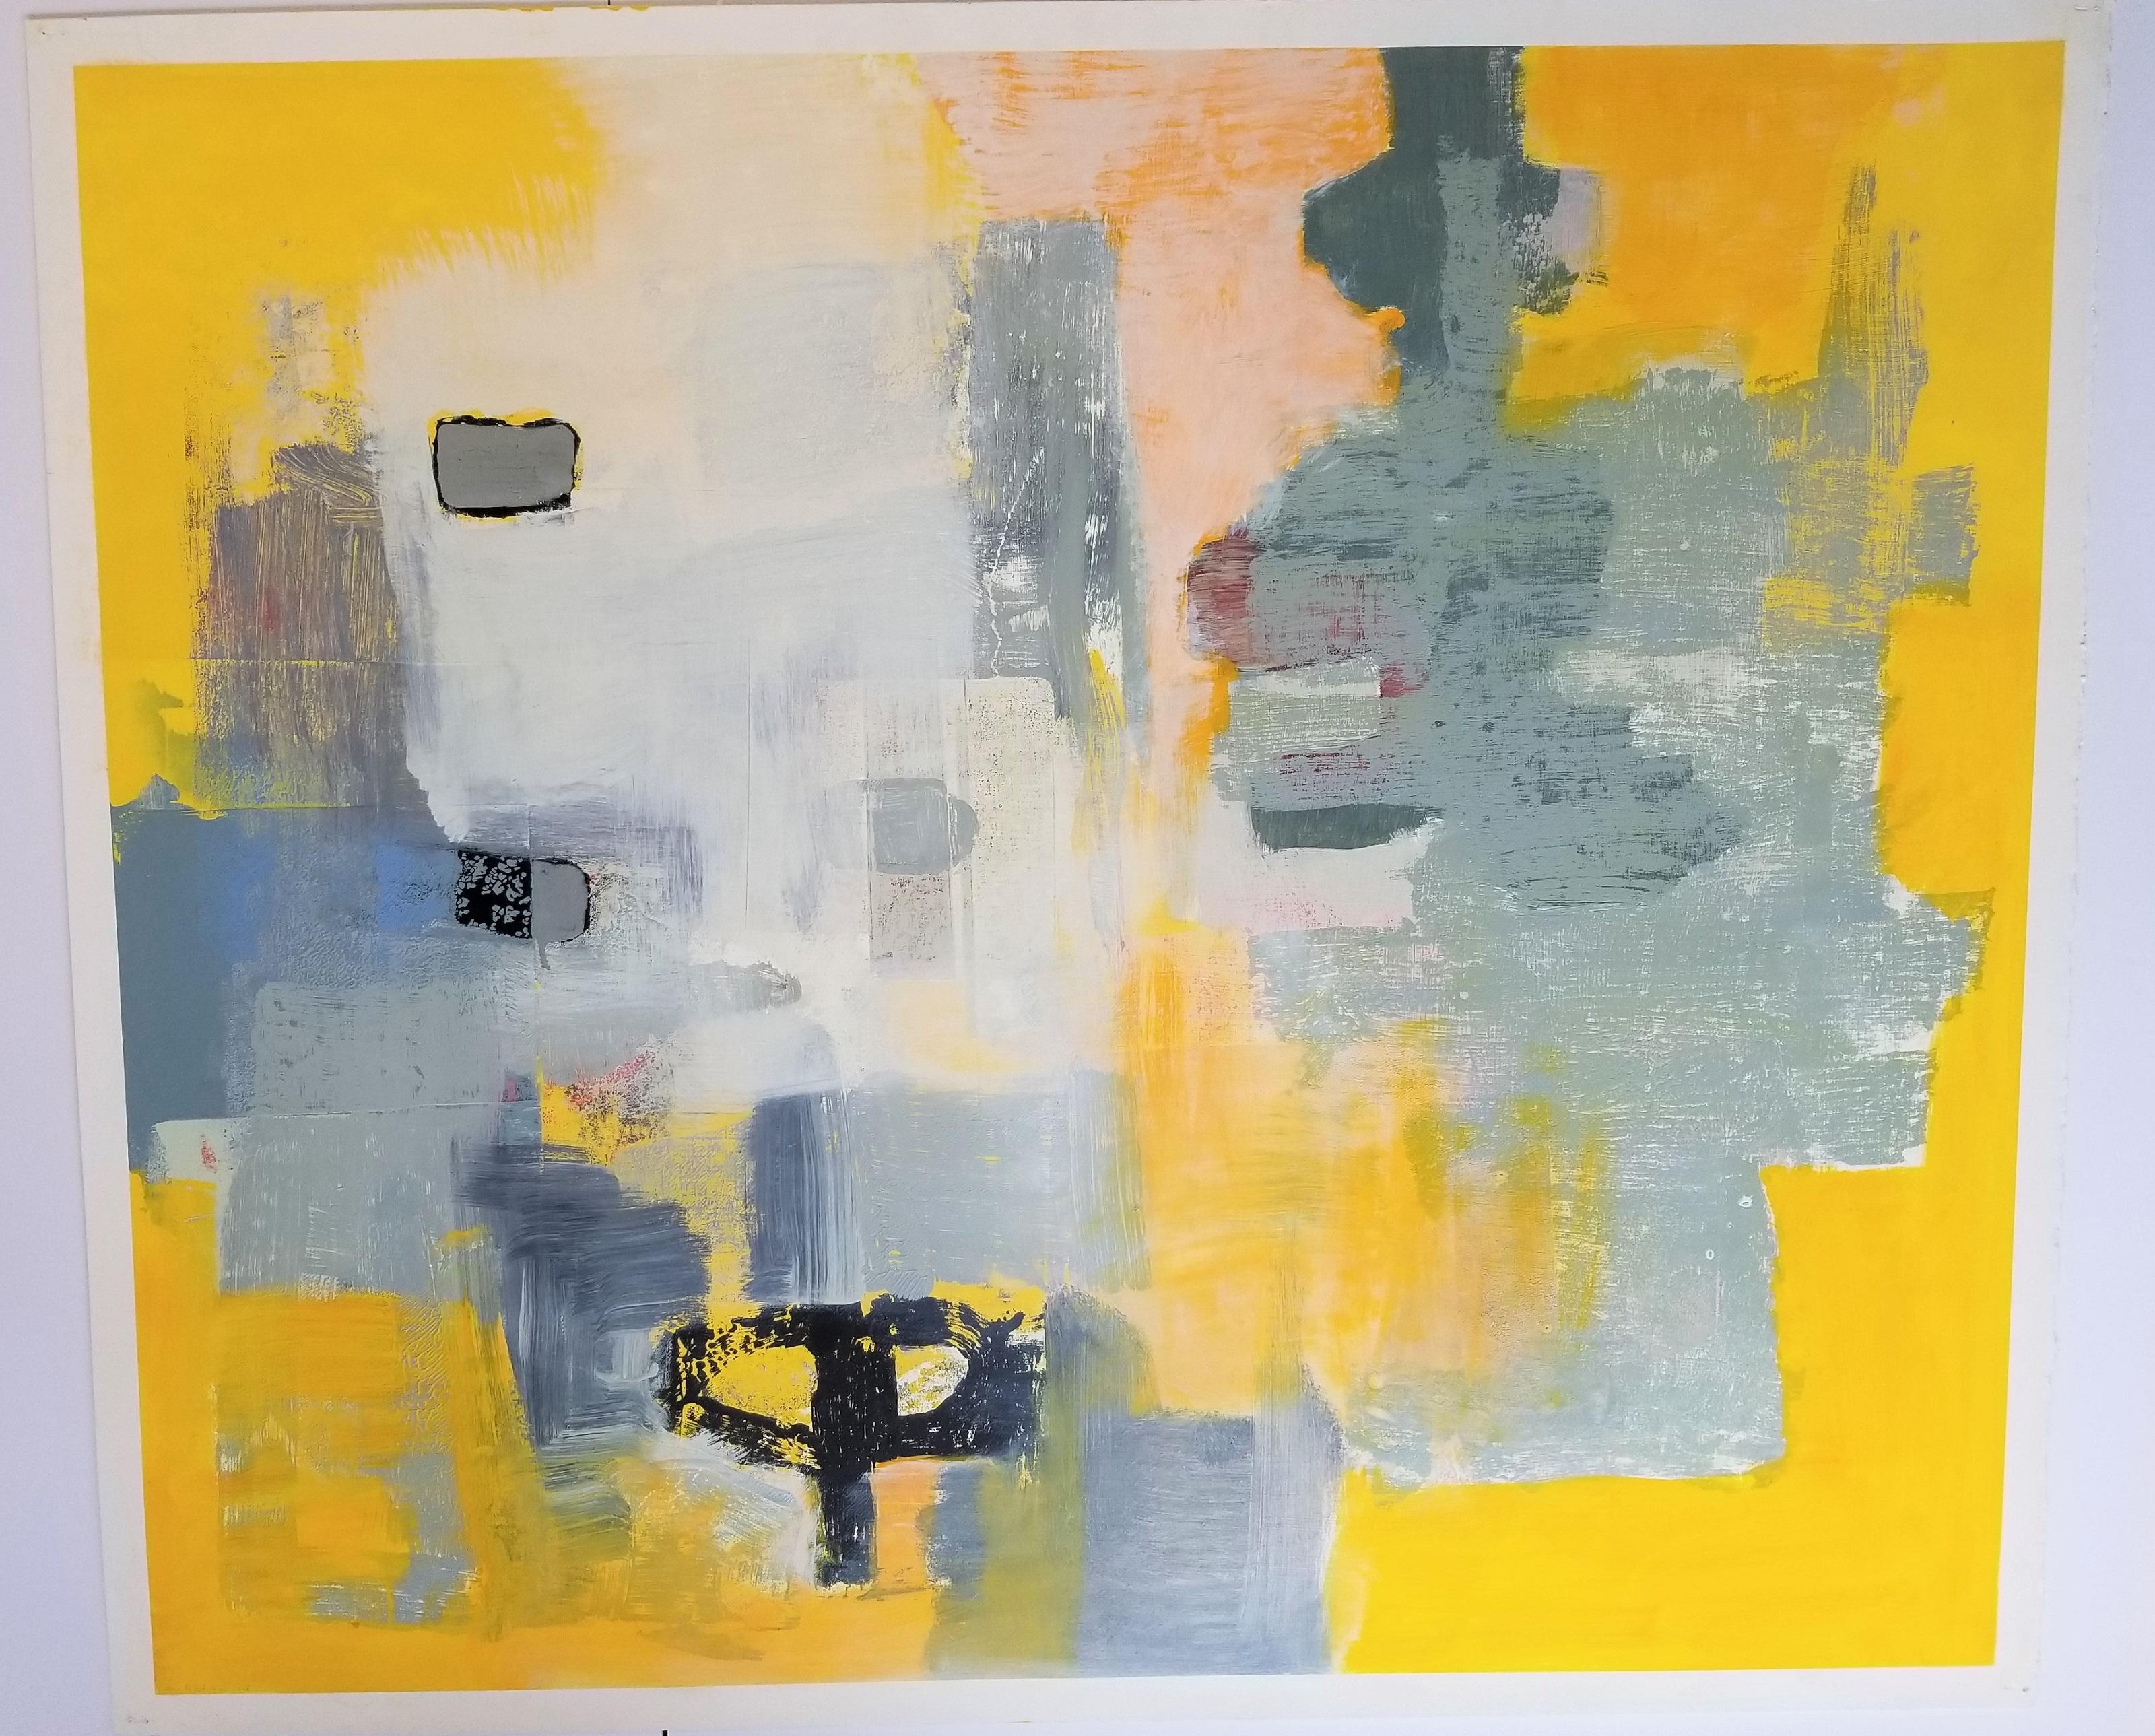 Abstract Painting Alexis Portilla - Grande peinture à l'huile sur papier - Code de couleur II - non encadrée